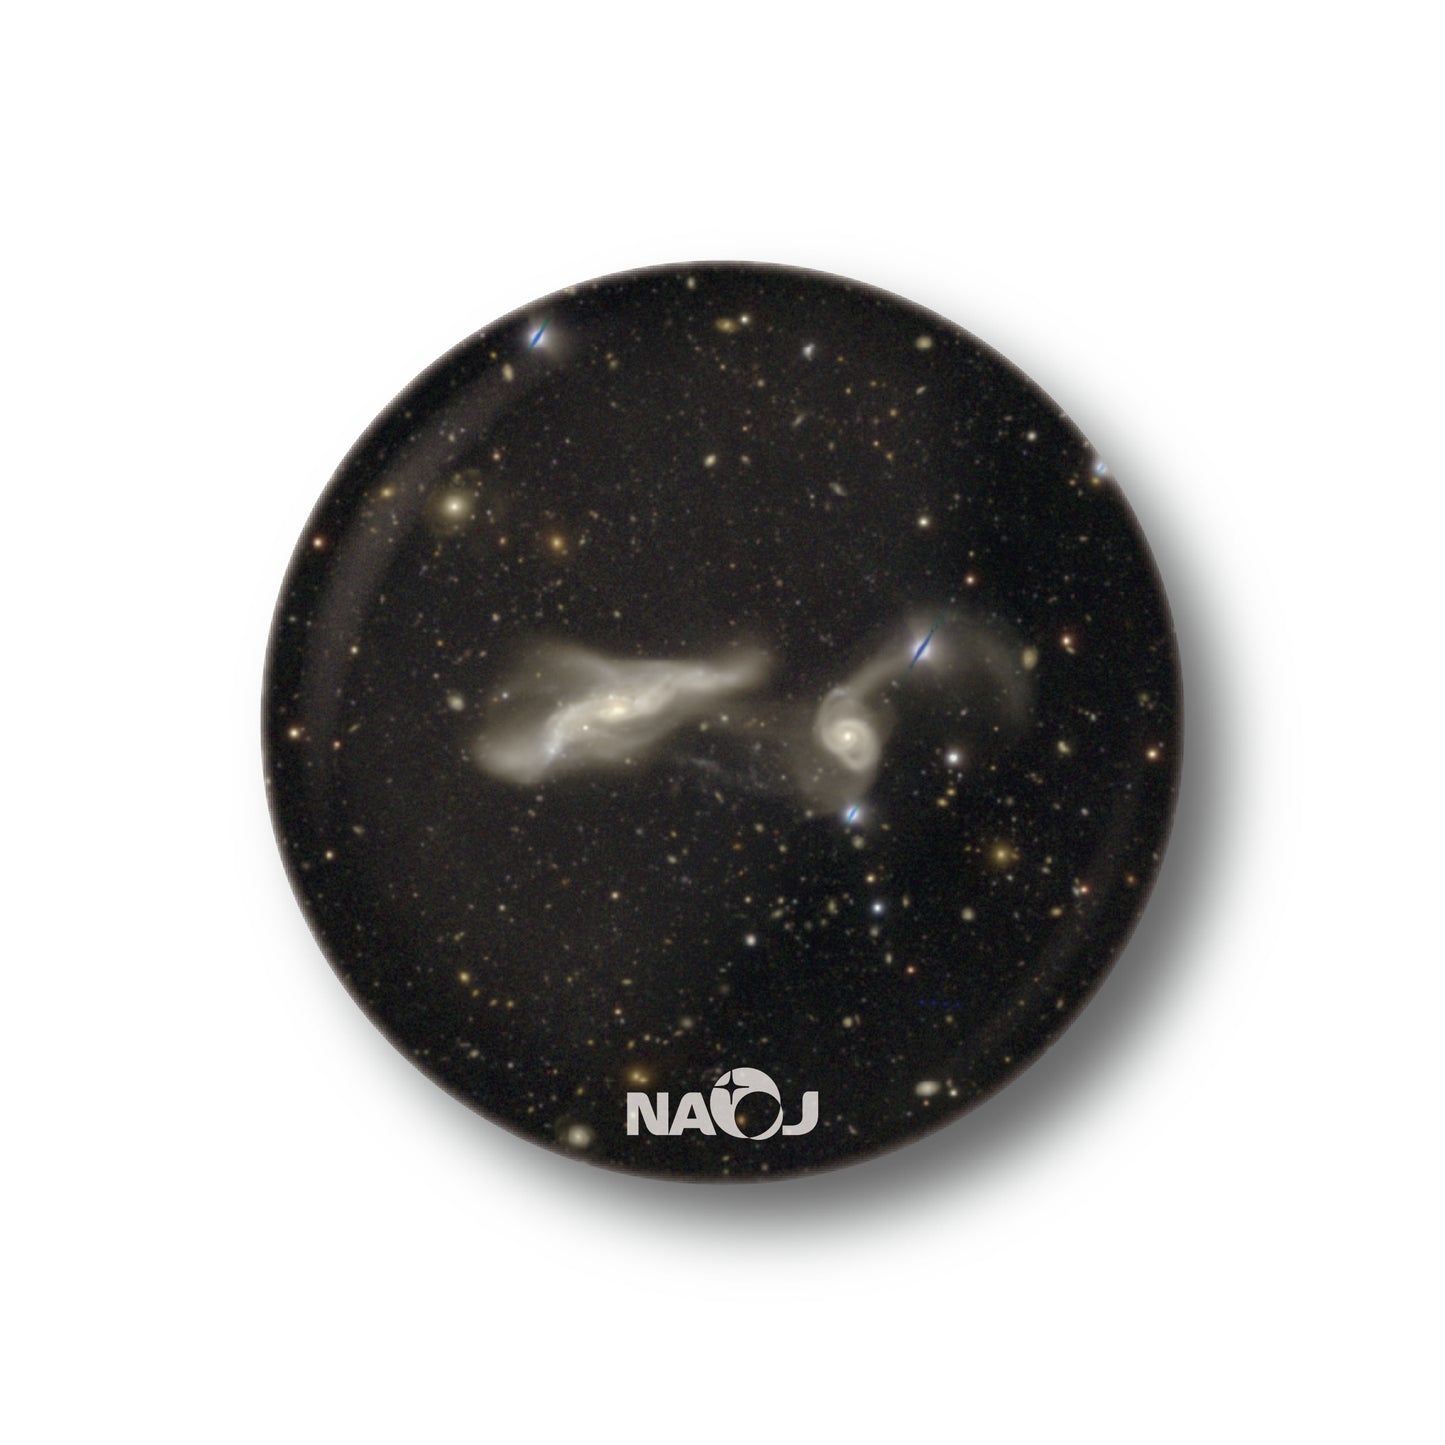 国立天文台  すばる望遠鏡HSCで見る宇宙  マグネット [小] 衝突銀河 UGC12589&2MASXJ23250382+0001068 01